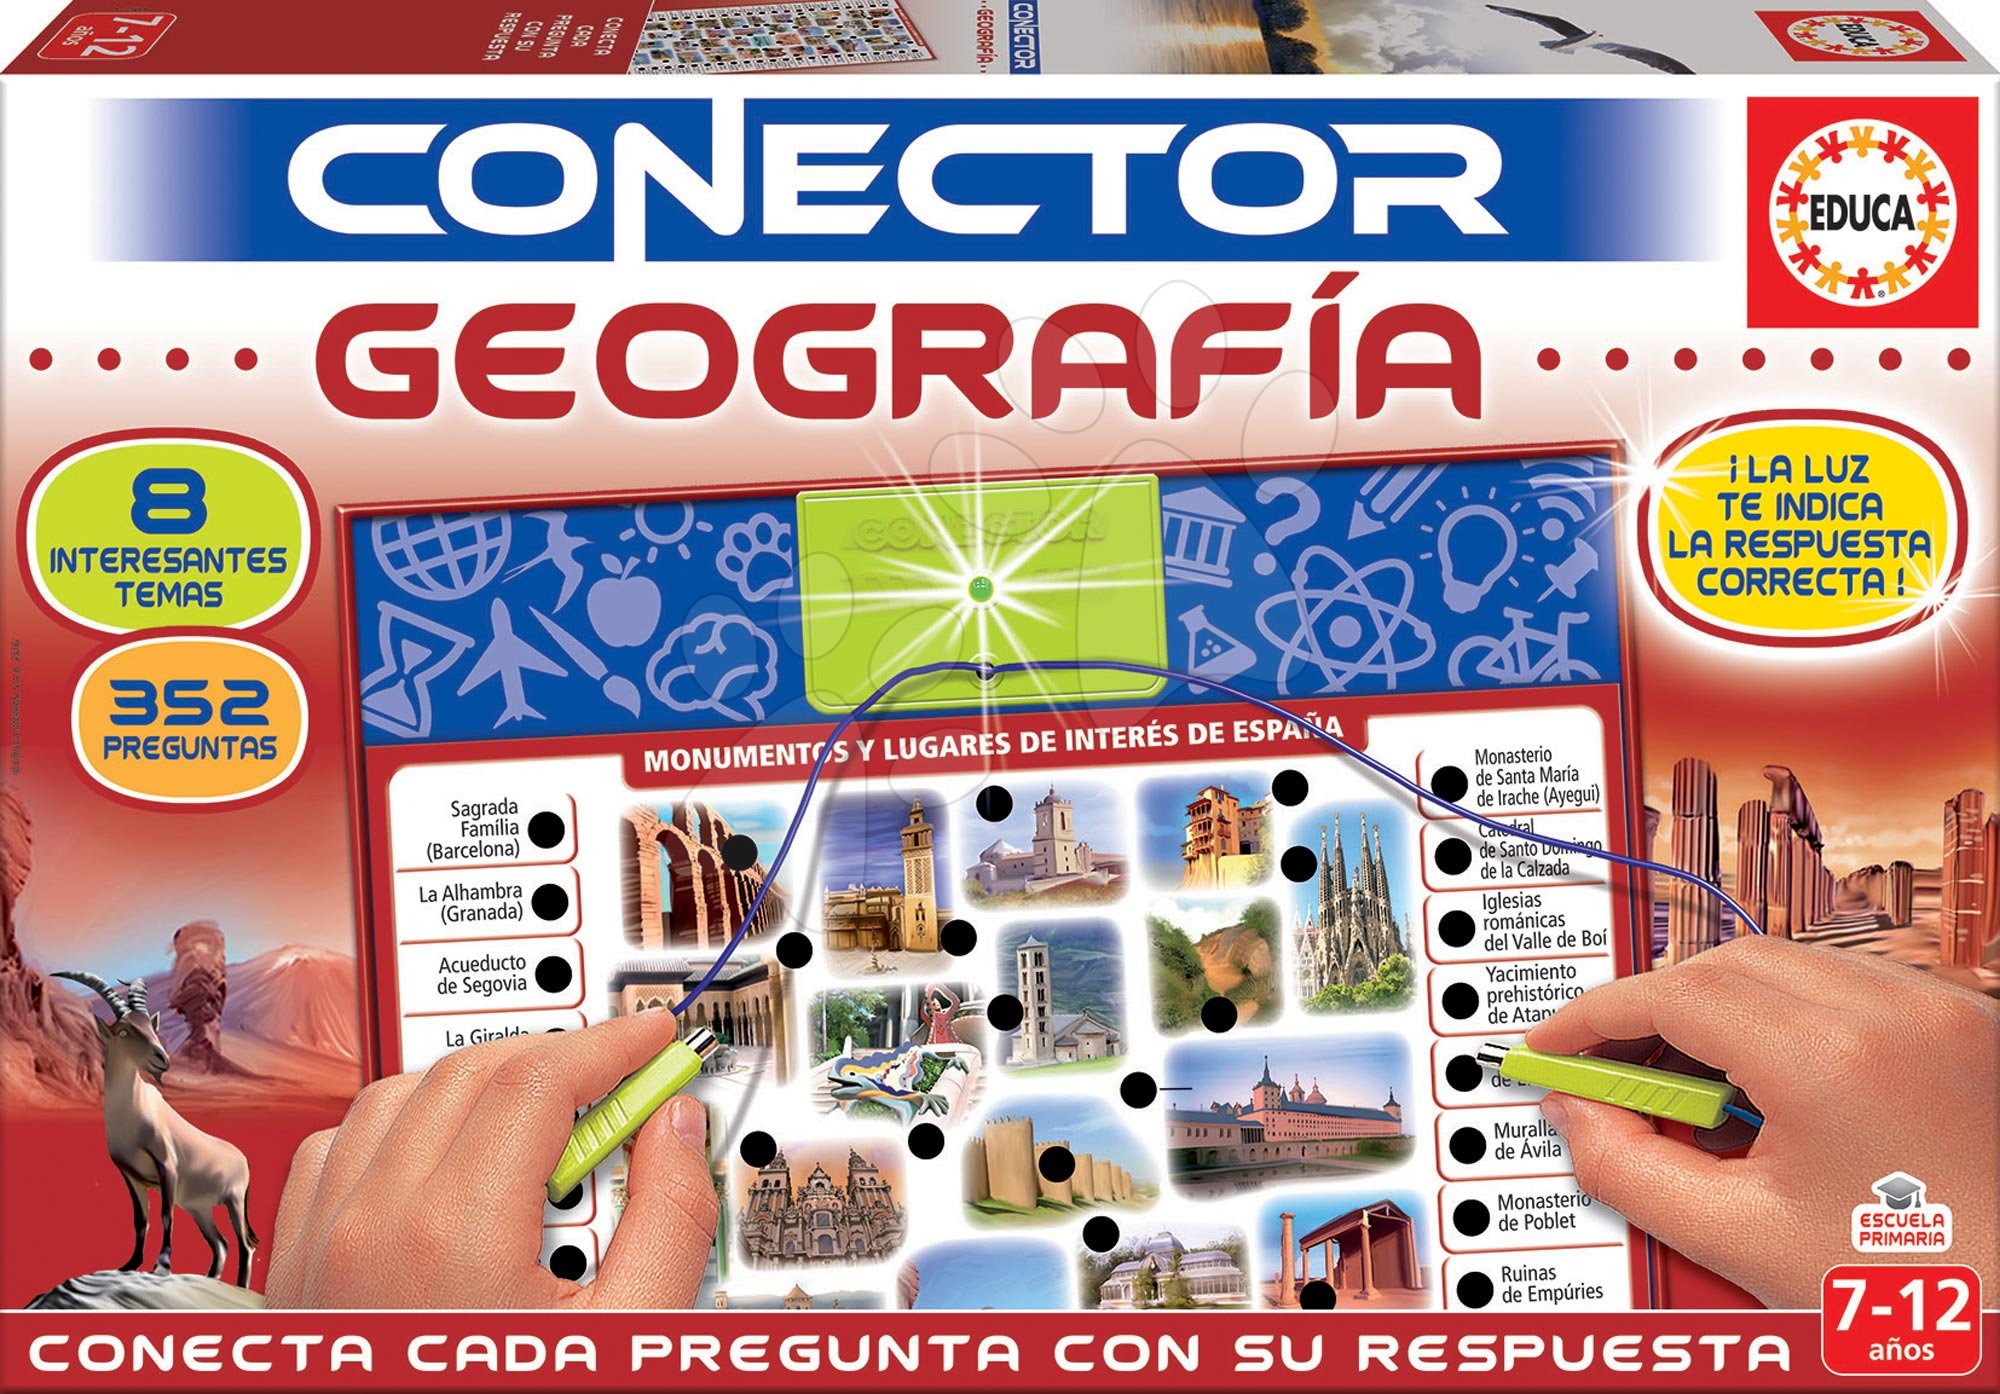 Idegennyelvű társasjátékok - Társasjáték Conector földrajz Geografia Educa spanyol nyelvű 352 kérdés 7-12 éves korosztálynak